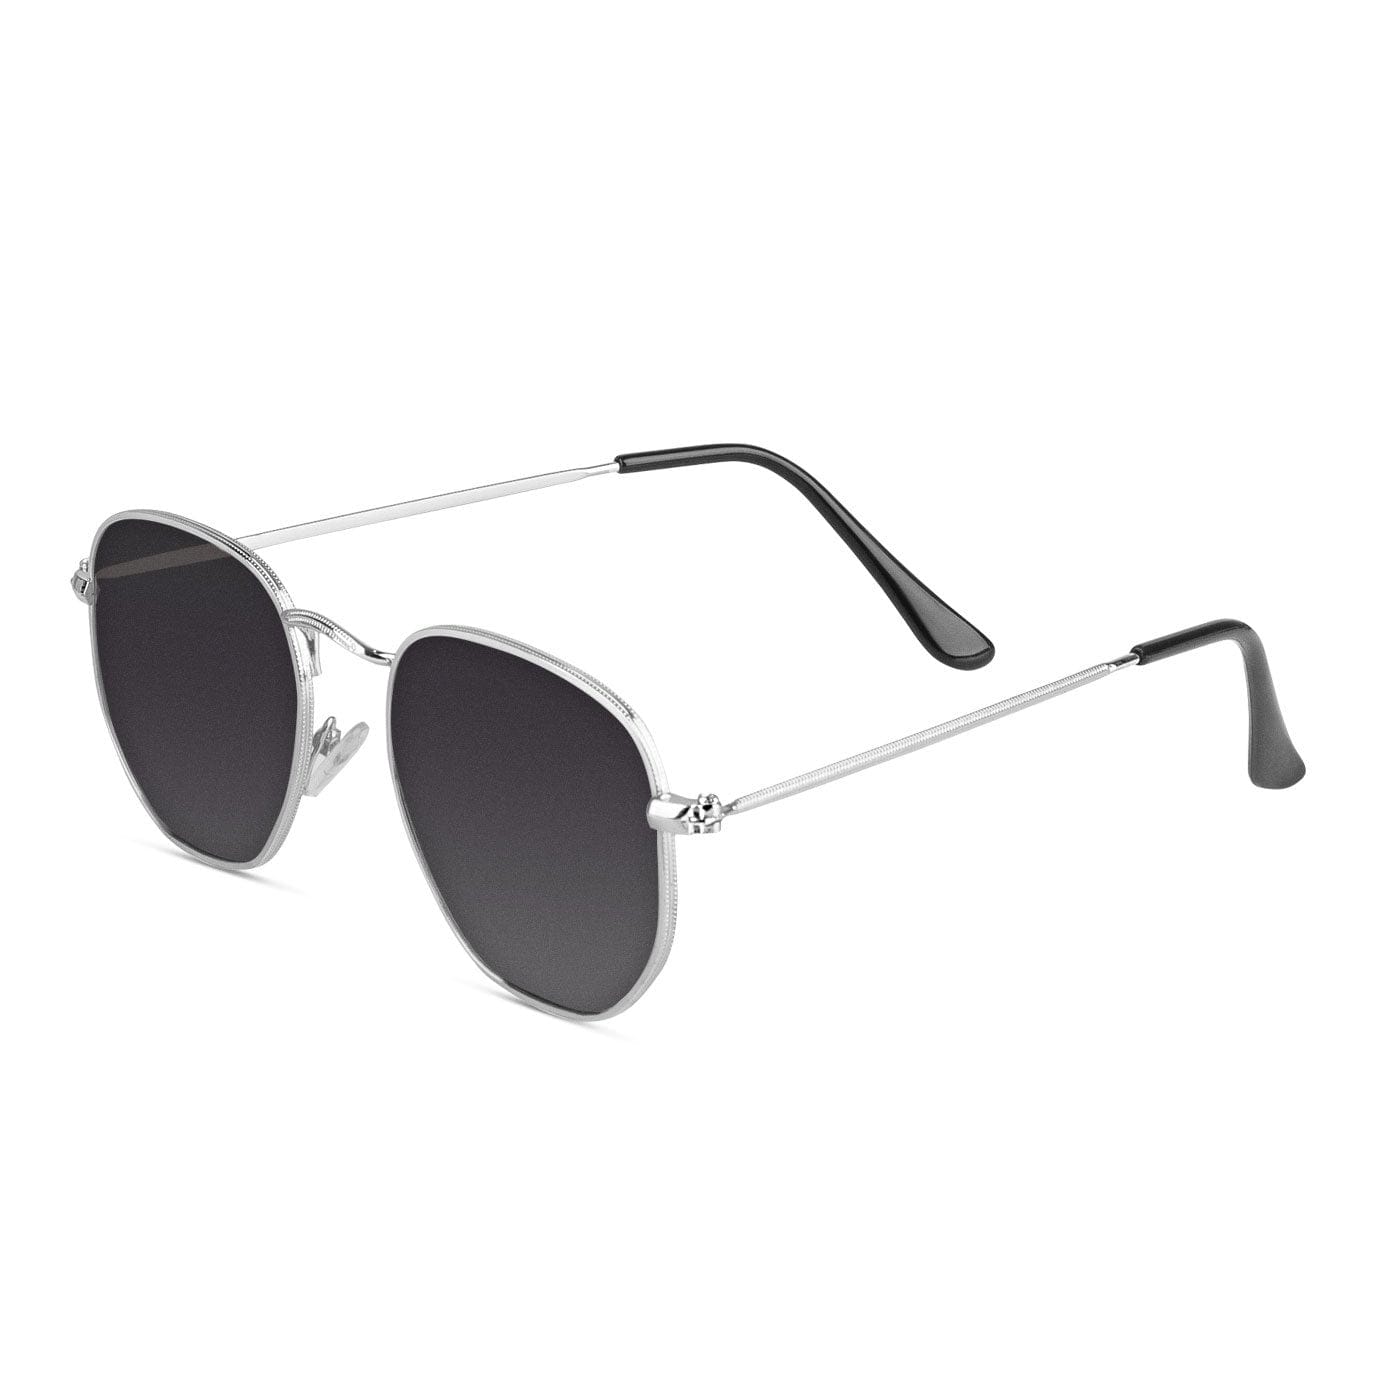 Samui Silver / Smoke Sunglasses